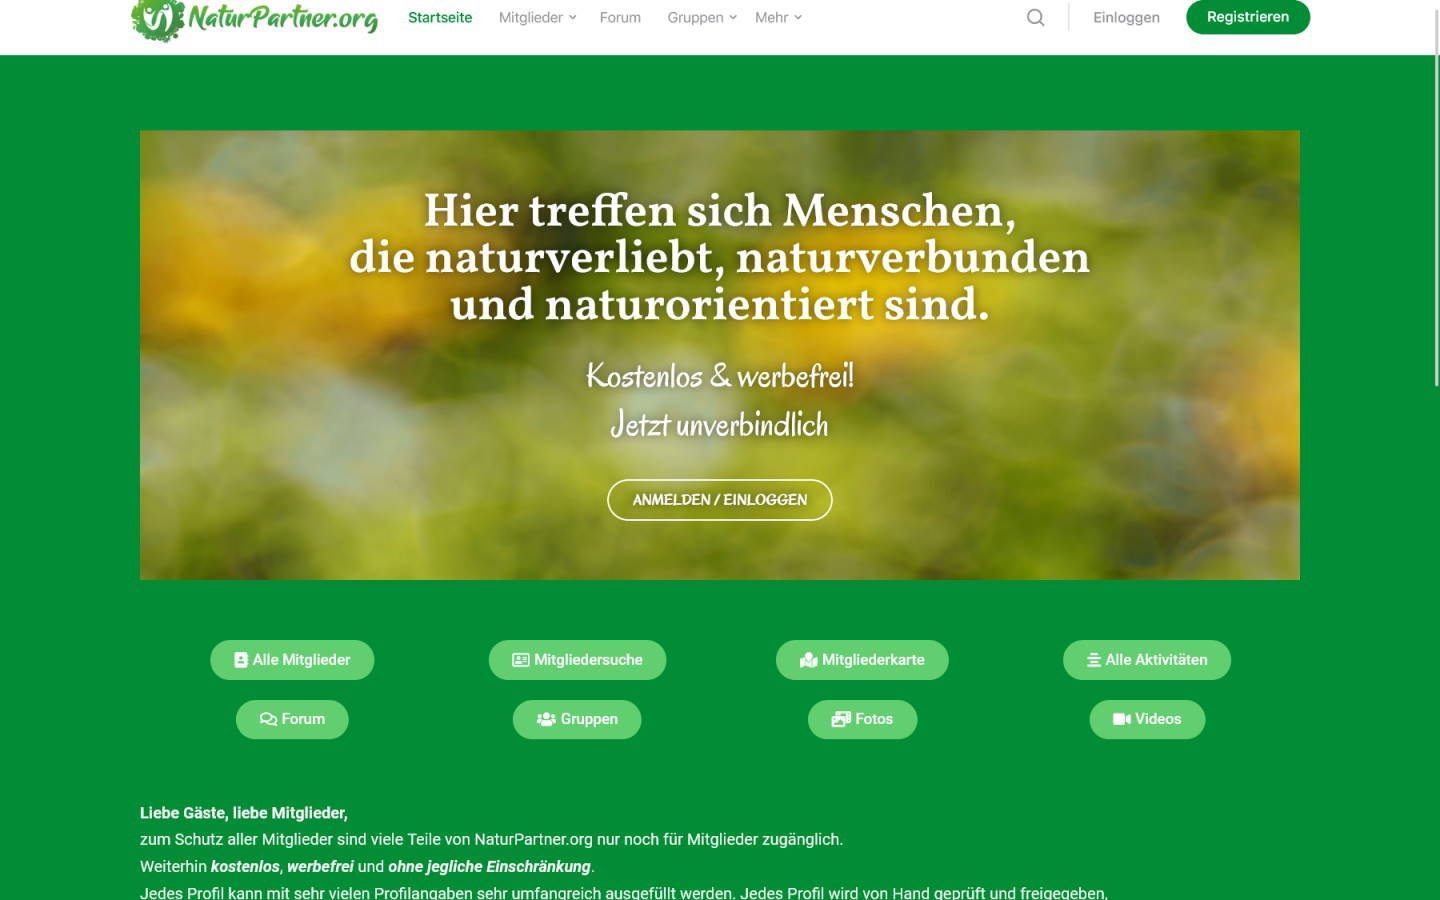 Testbericht NaturPartner.org Abzocke